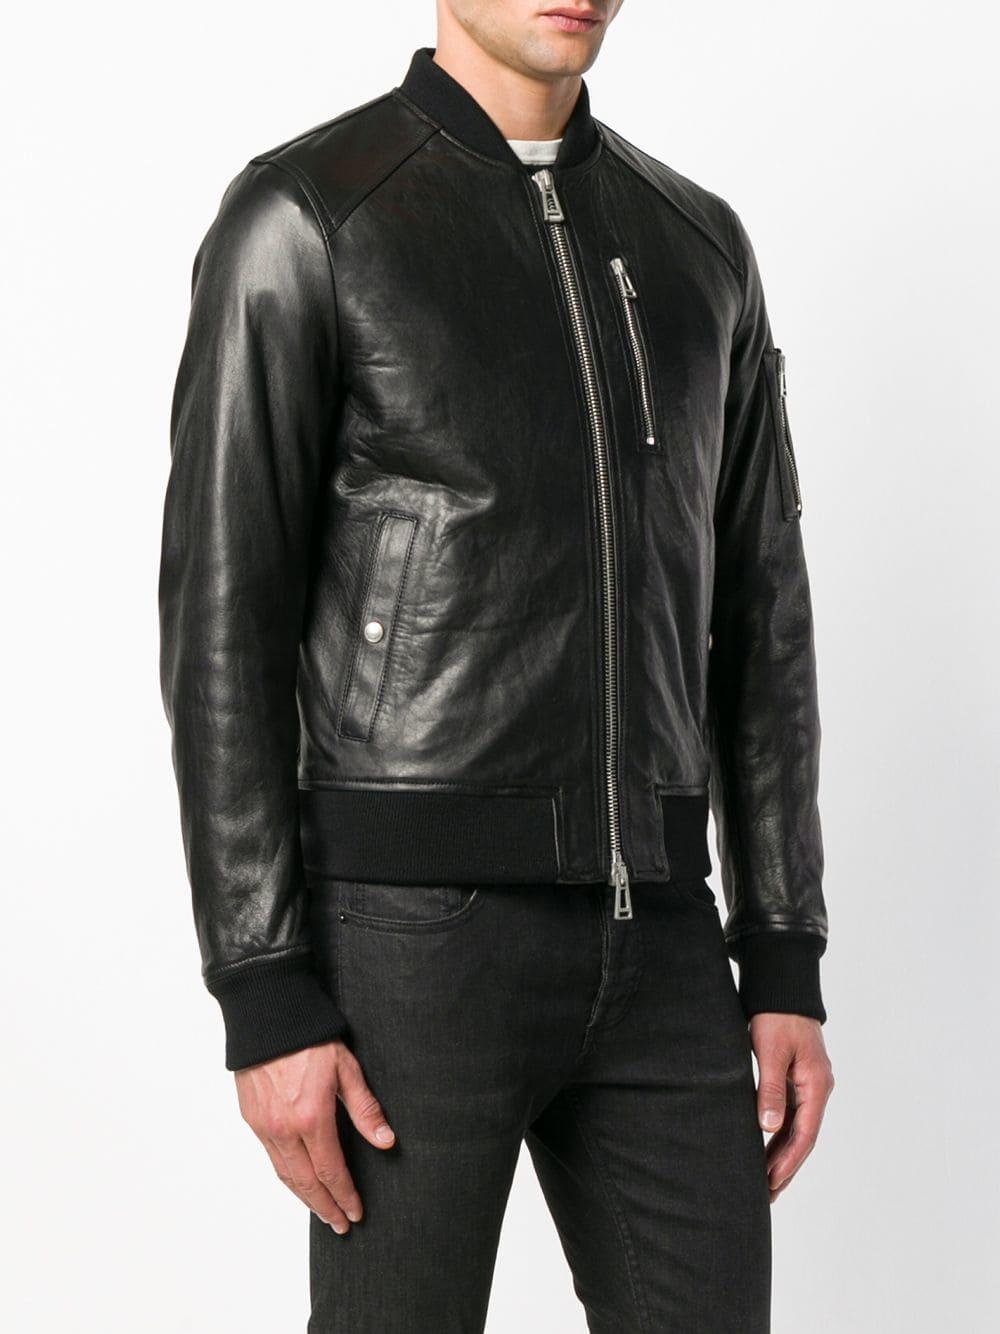 Belstaff Leather Bomber Jacket in Black for Men - Lyst